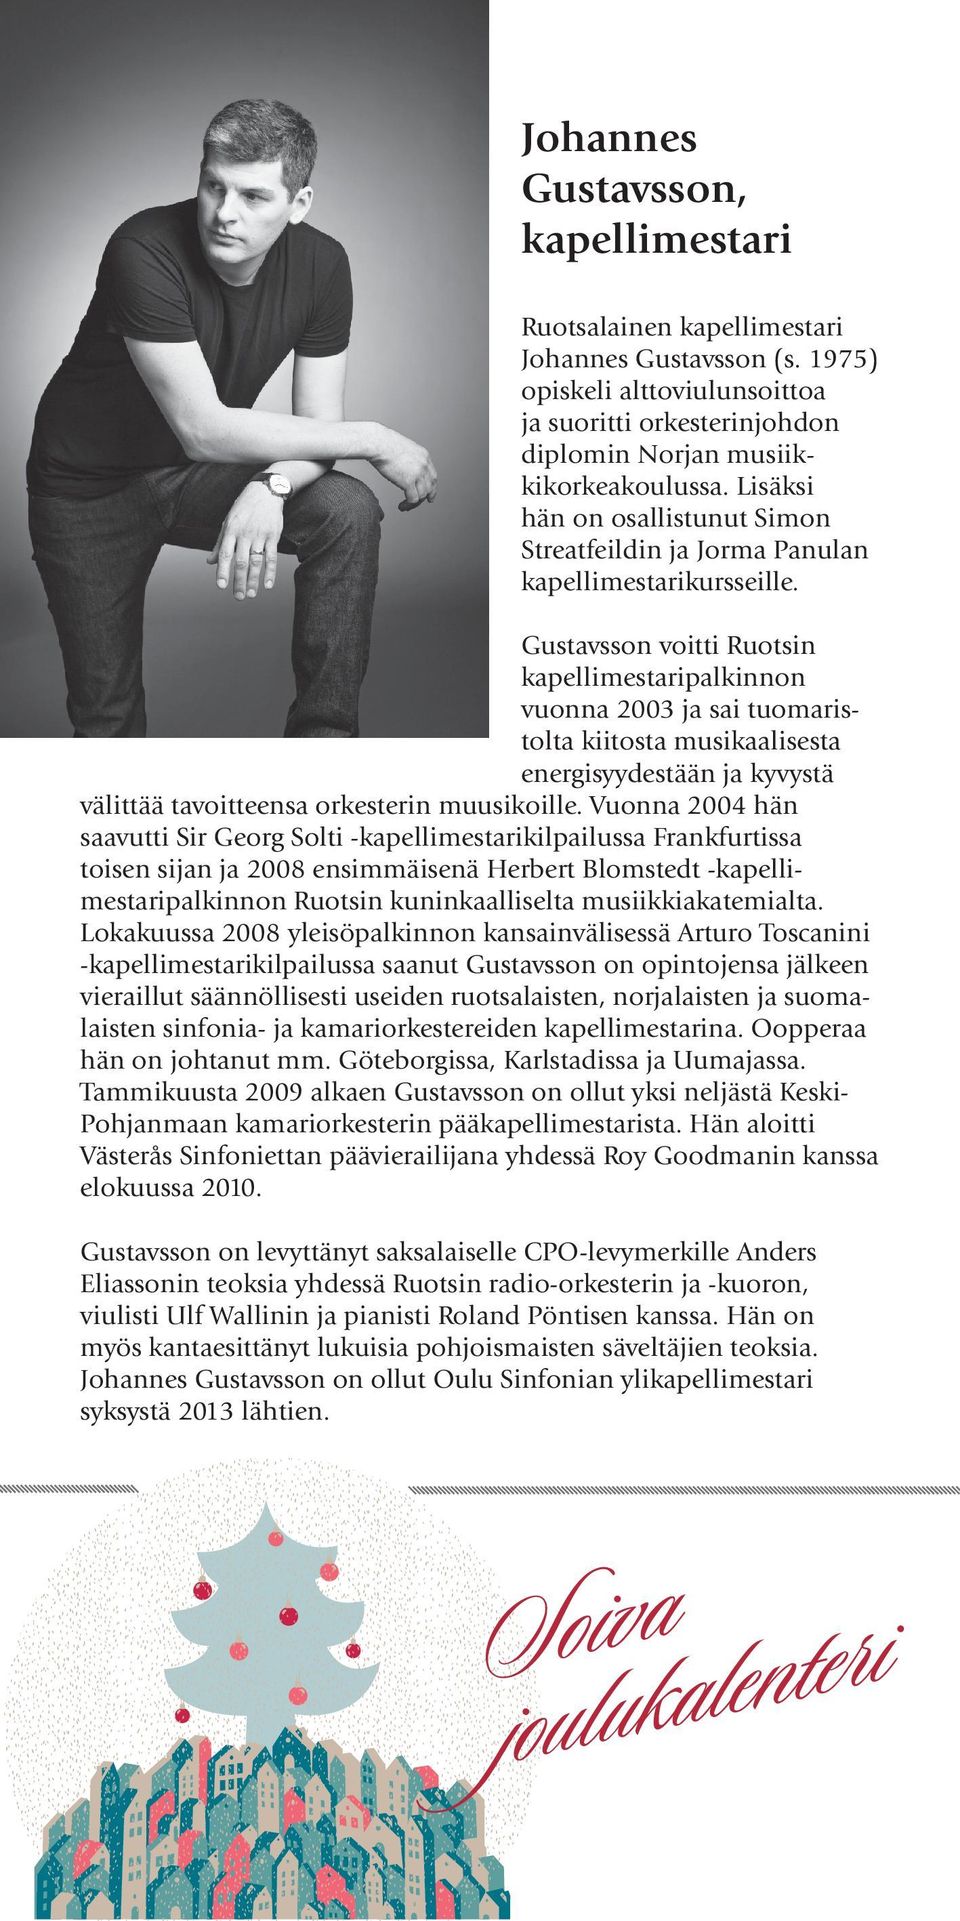 Gustavsson voitti Ruotsin kapellimestaripalkinnon vuonna 2003 ja sai tuomaristolta kiitosta musikaalisesta energisyydestään ja kyvystä välittää tavoitteensa orkesterin muusikoille.